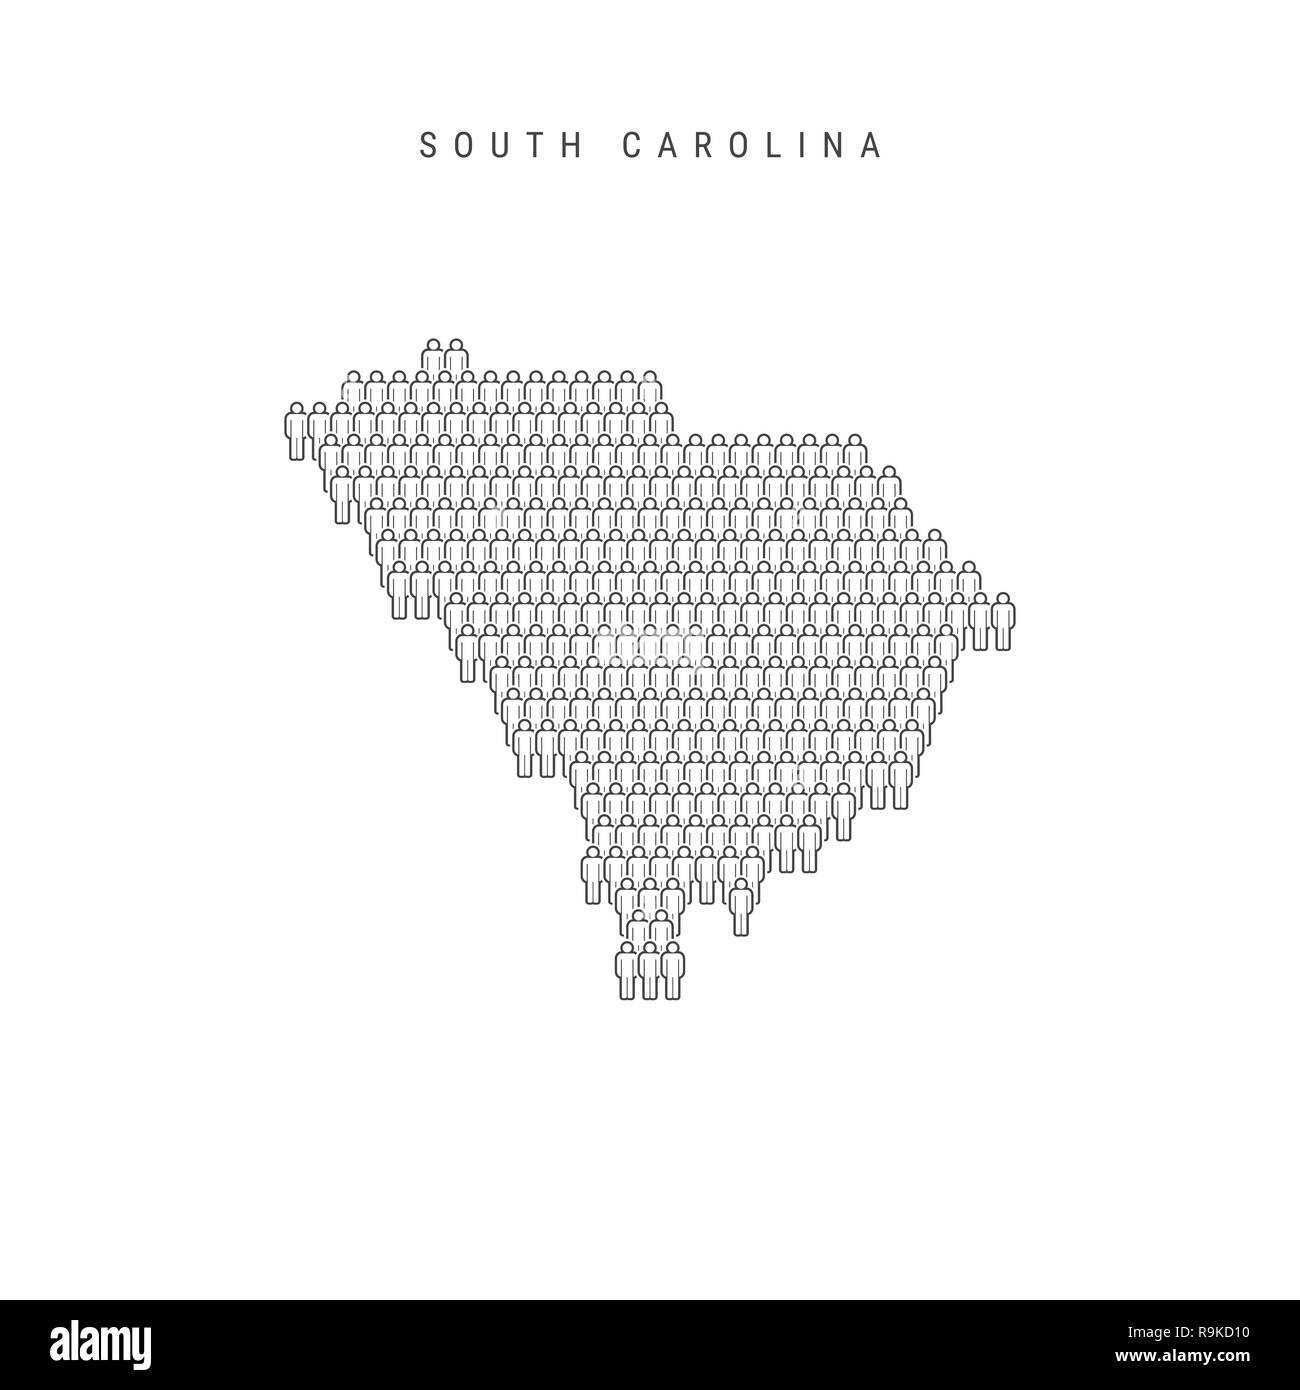 Leute Karte von South Carolina, USA. Stilisierte Silhouette, Leute in der Form einer Karte von South Carolina. South Carolina Bevölkerung. Illustra Stockfoto